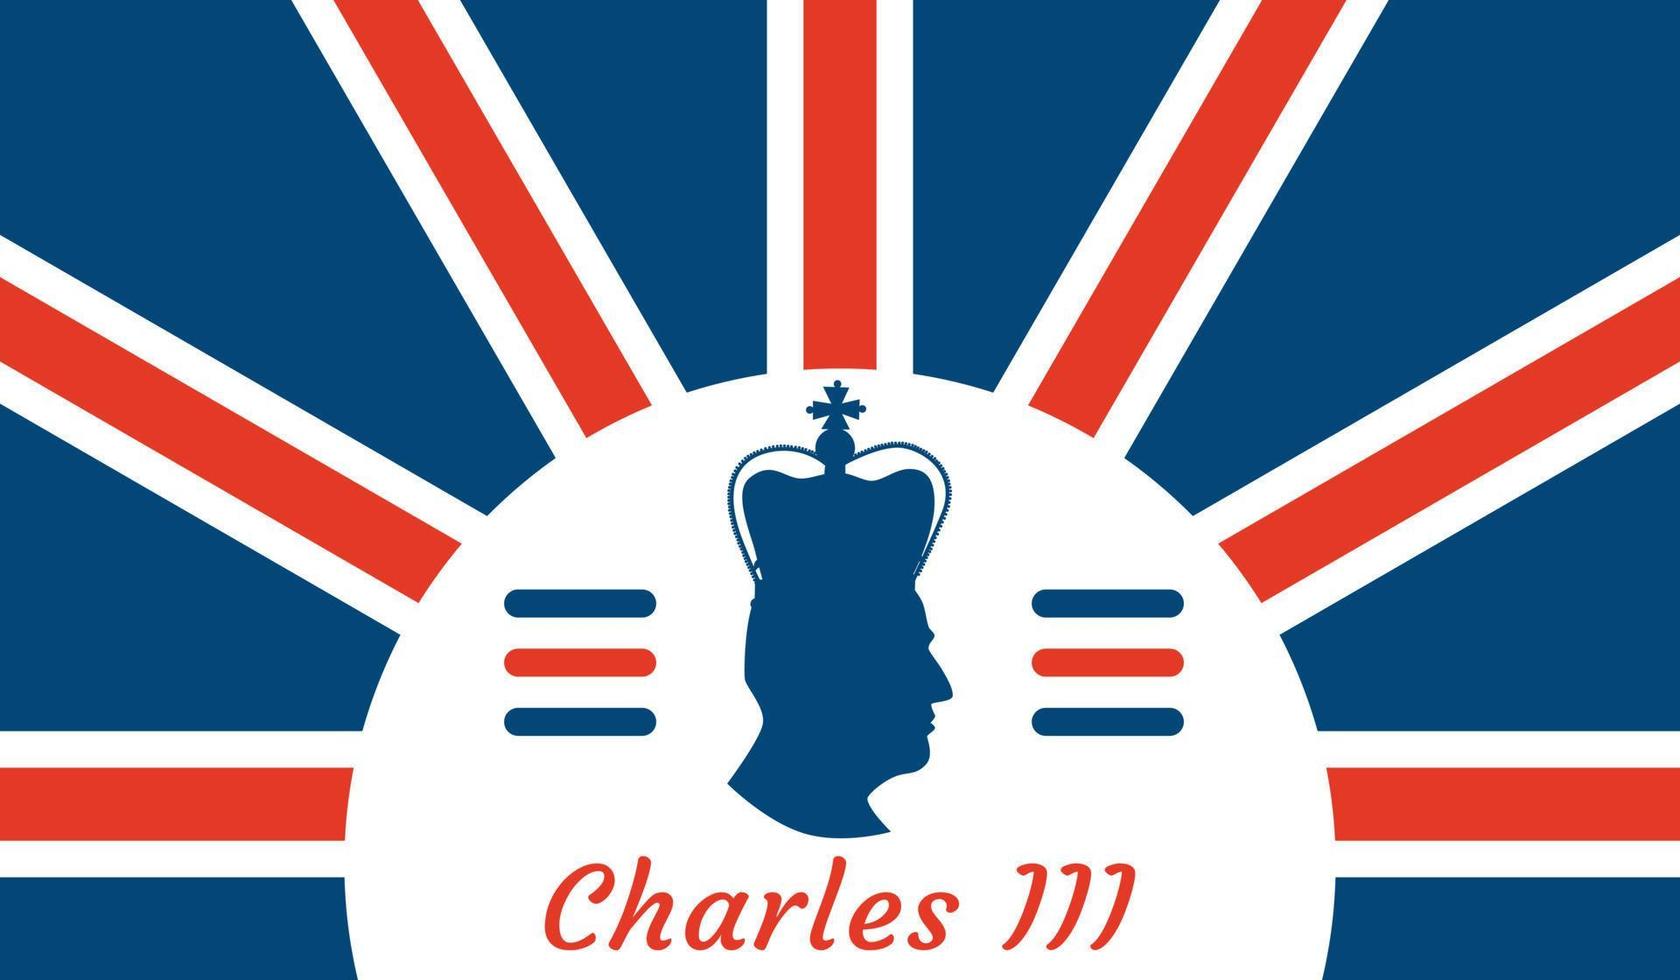 le roi charles iii. bannière pour célébrer le couronnement et régner sur le trône britannique vecteur